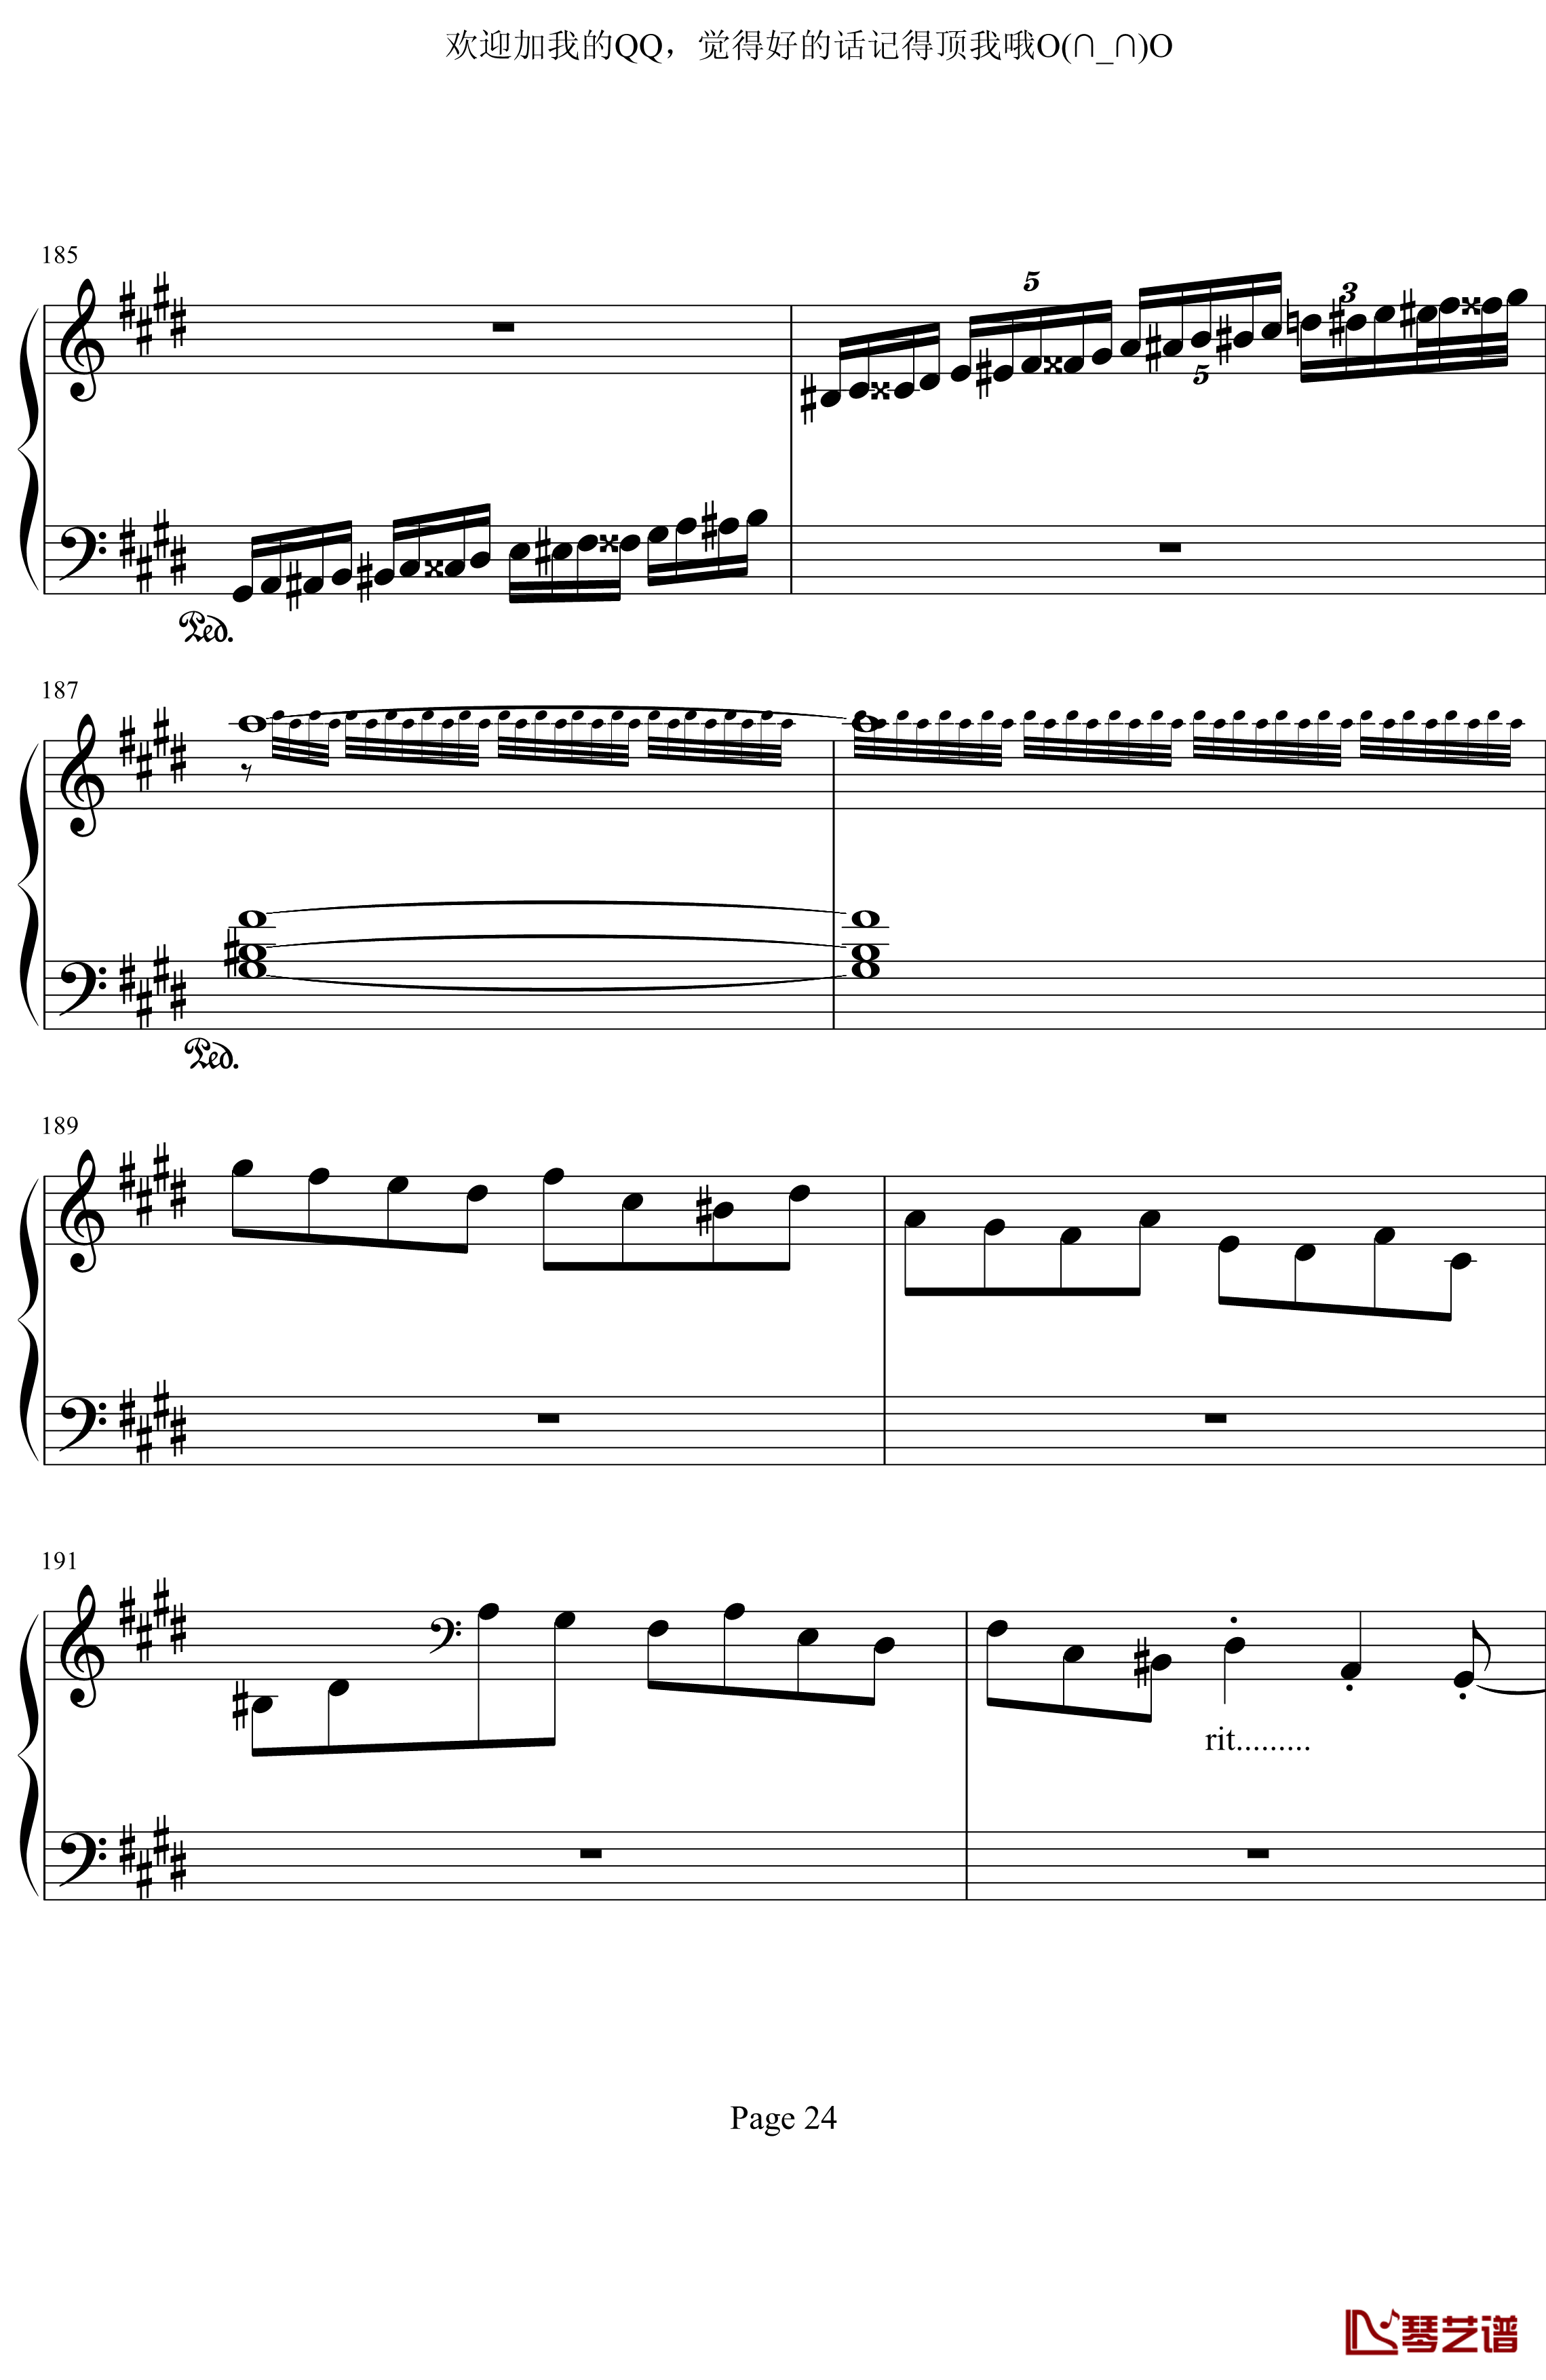 月光奏鸣曲第三乐章钢琴谱-贝多芬-beethoven24